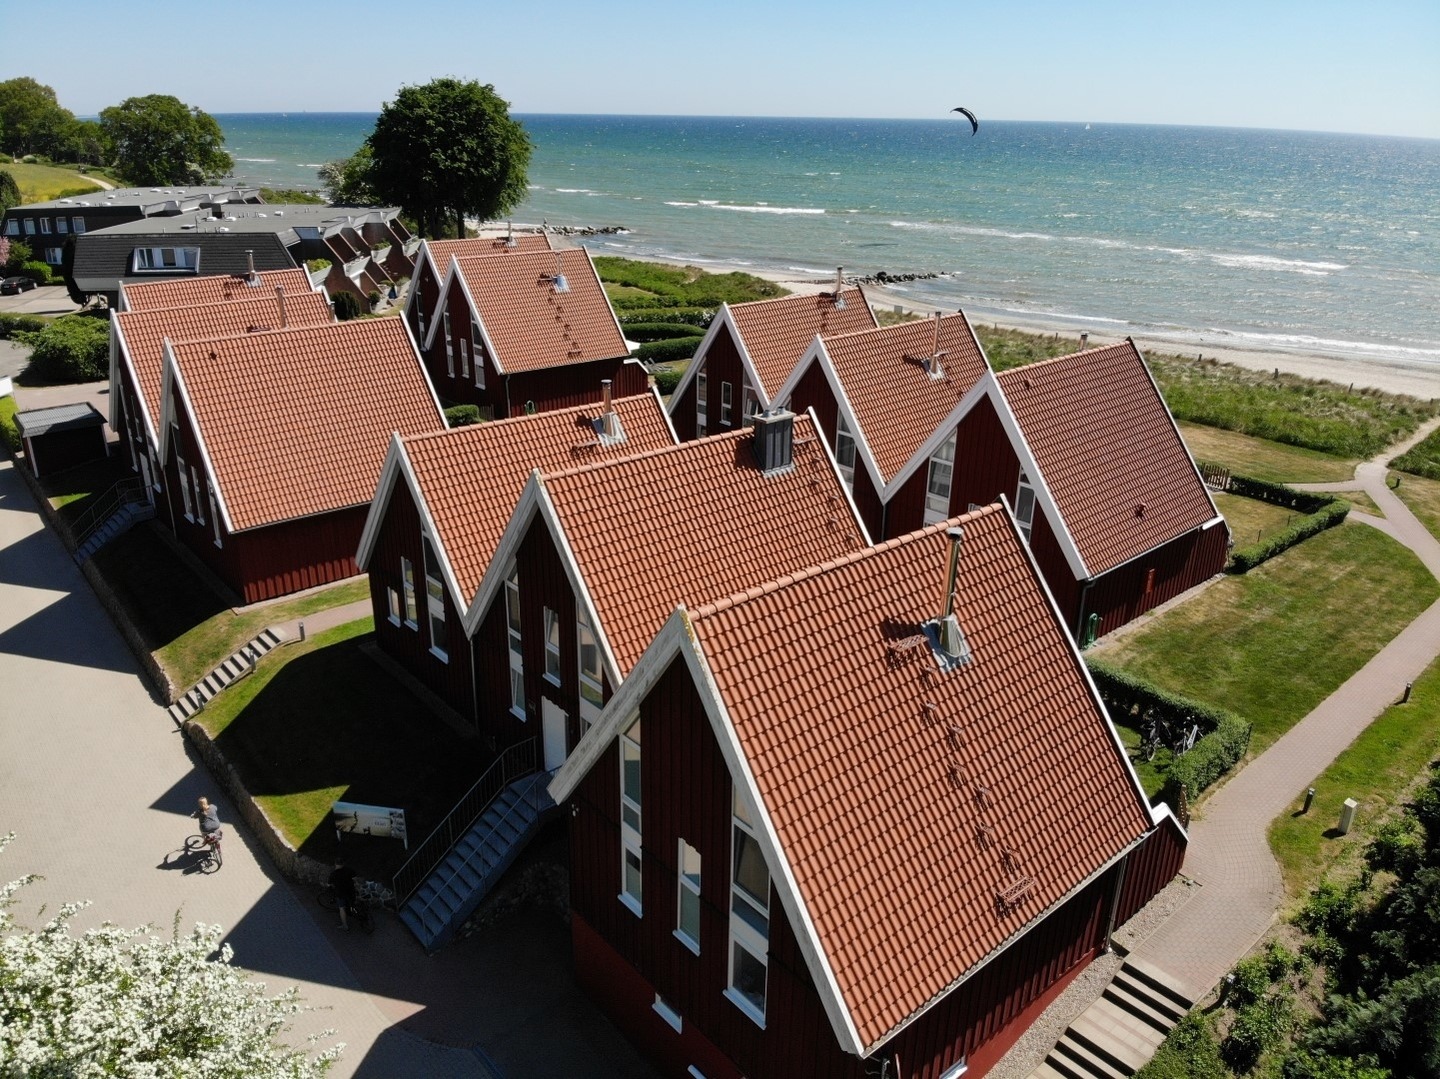 Wave Ferienhaus in Schleswig Holstein